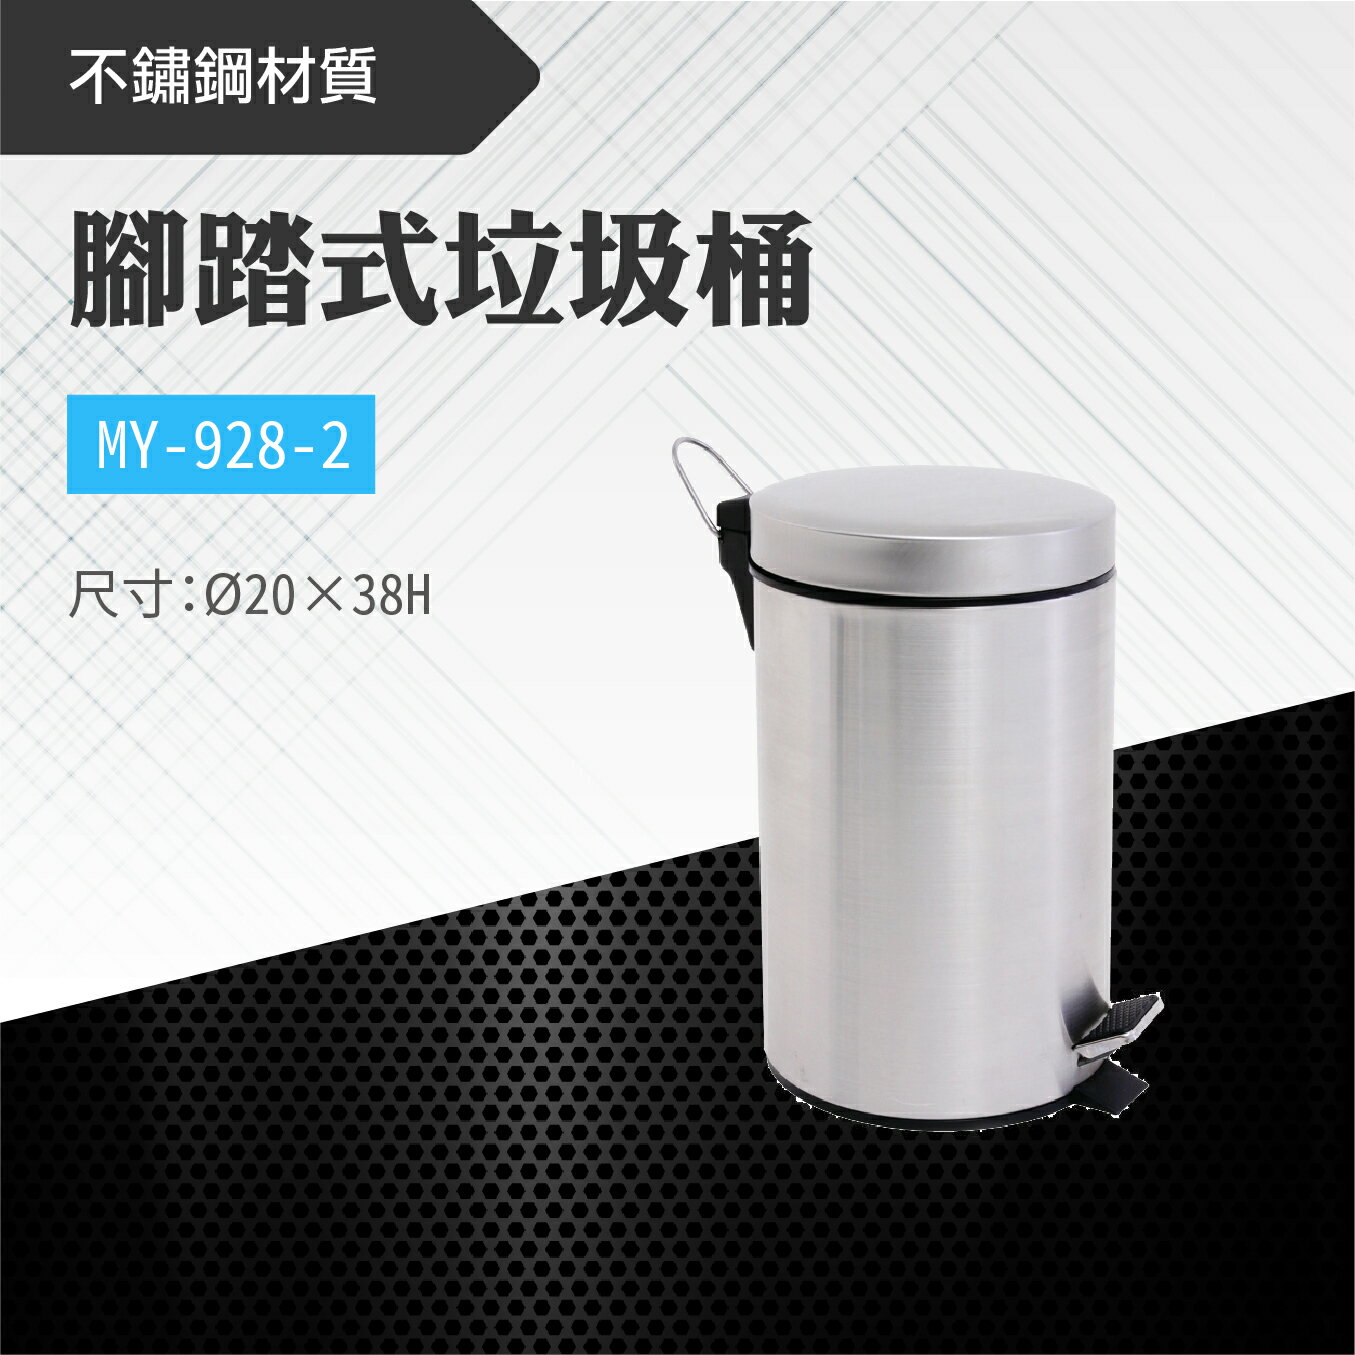 台灣製 腳踏式垃圾桶MY-928-2 不鏽鋼 金屬垃圾桶 回收桶 圓筒型 圓形 居家 清潔 廚房 客廳 辦公室